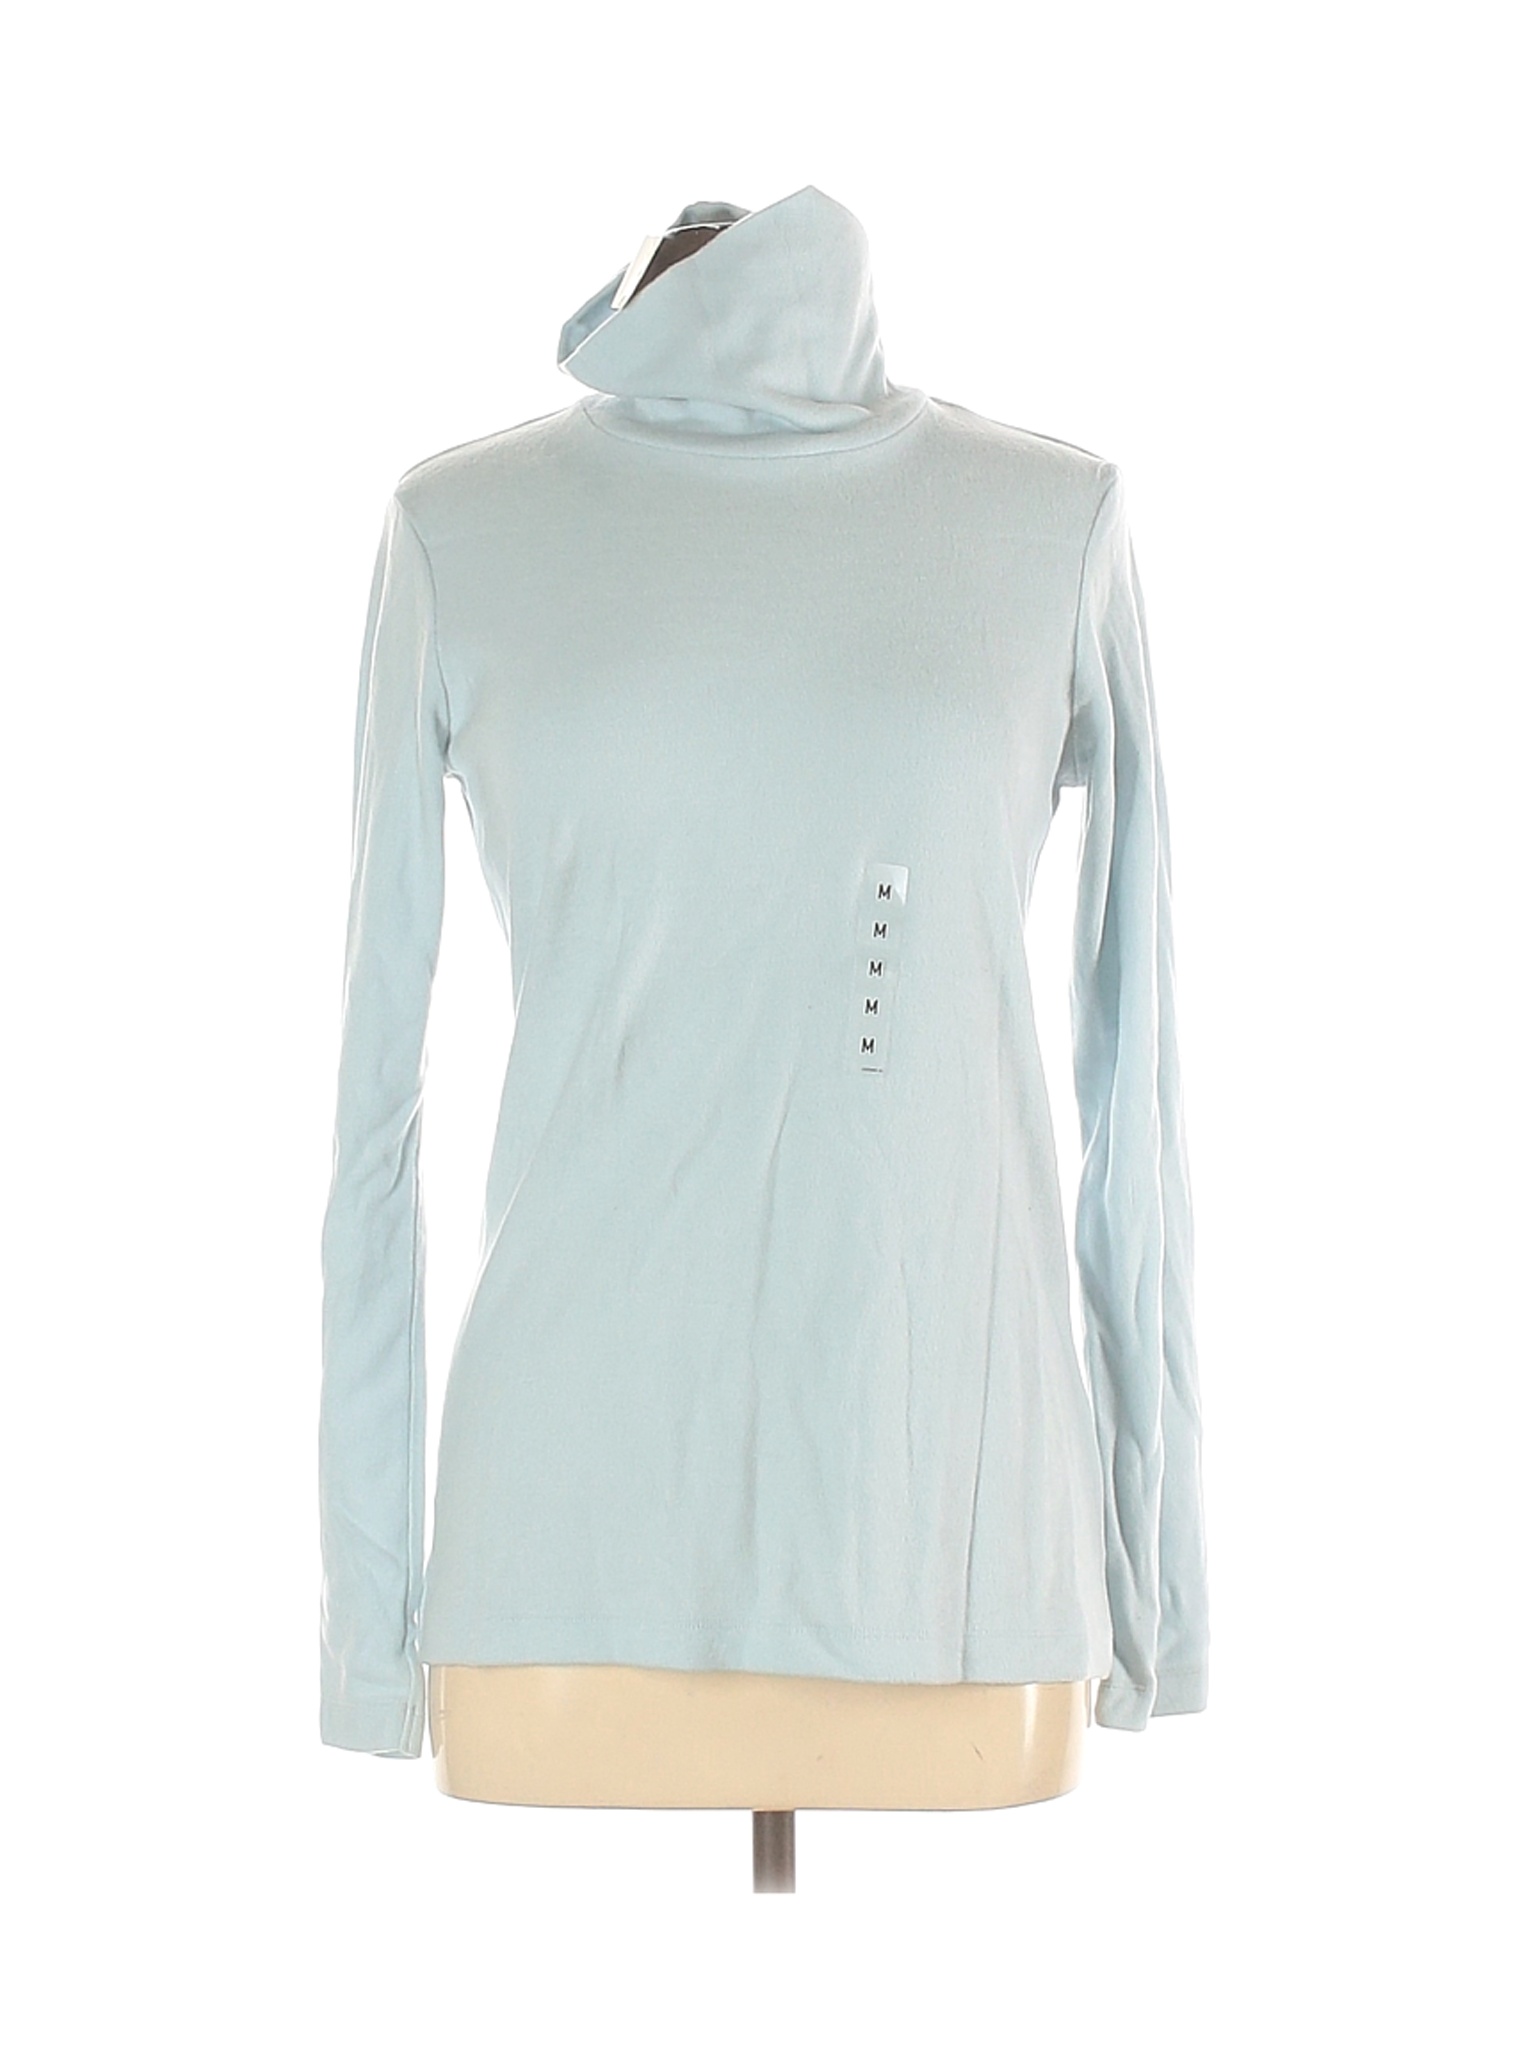  Uniqlo  Women Blue Turtleneck  Sweater M eBay